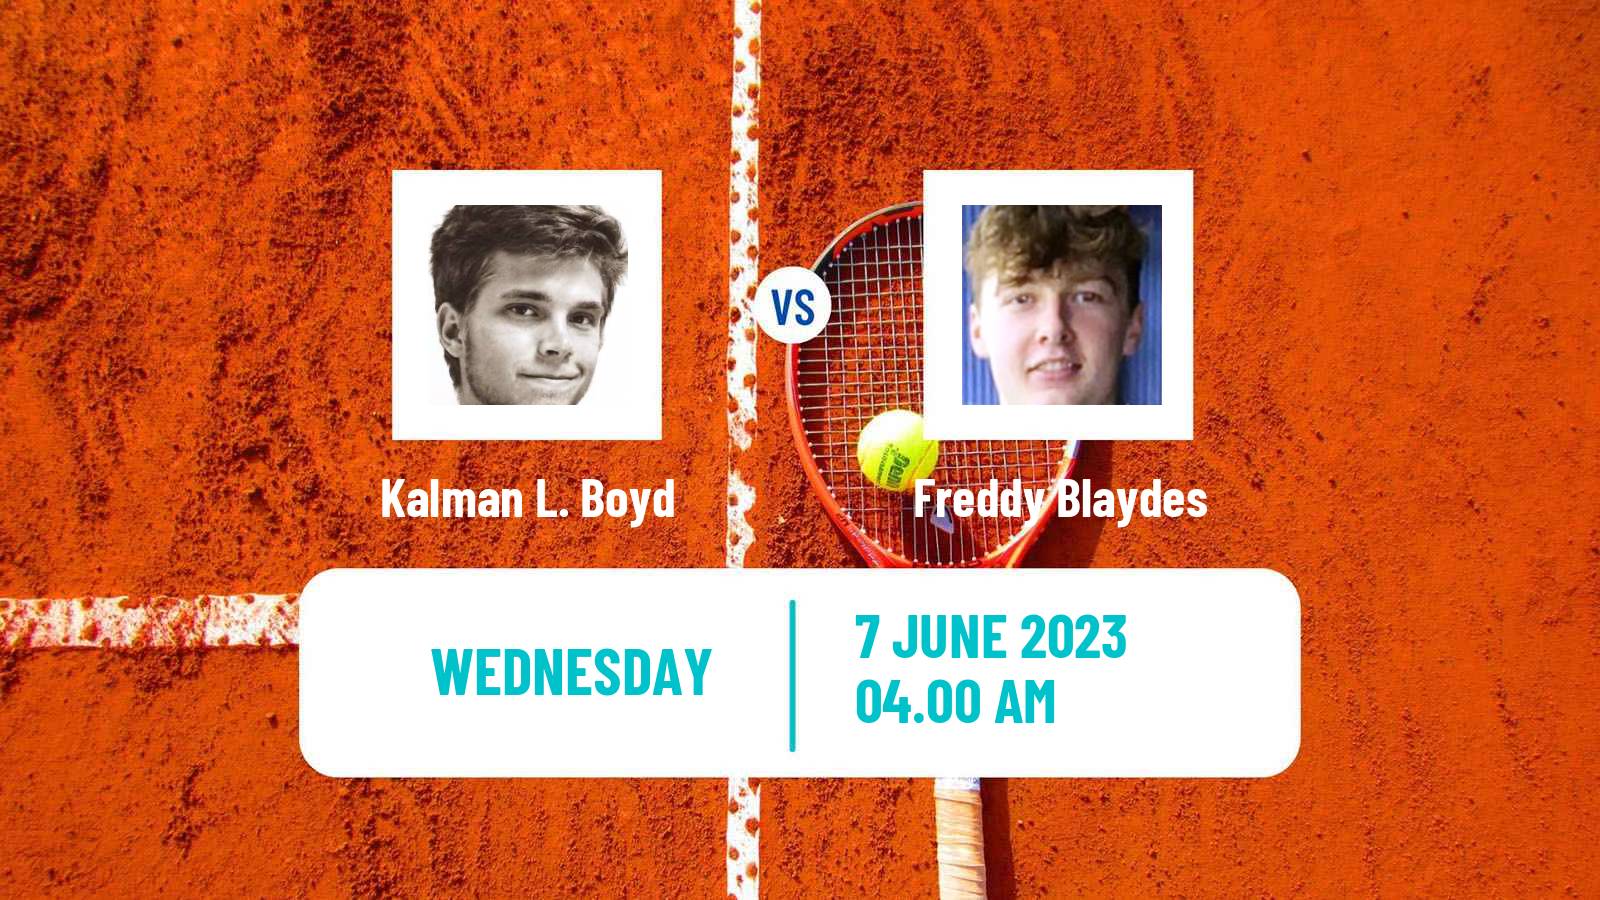 Tennis ITF M15 Monastir 23 Men Kalman L. Boyd - Freddy Blaydes